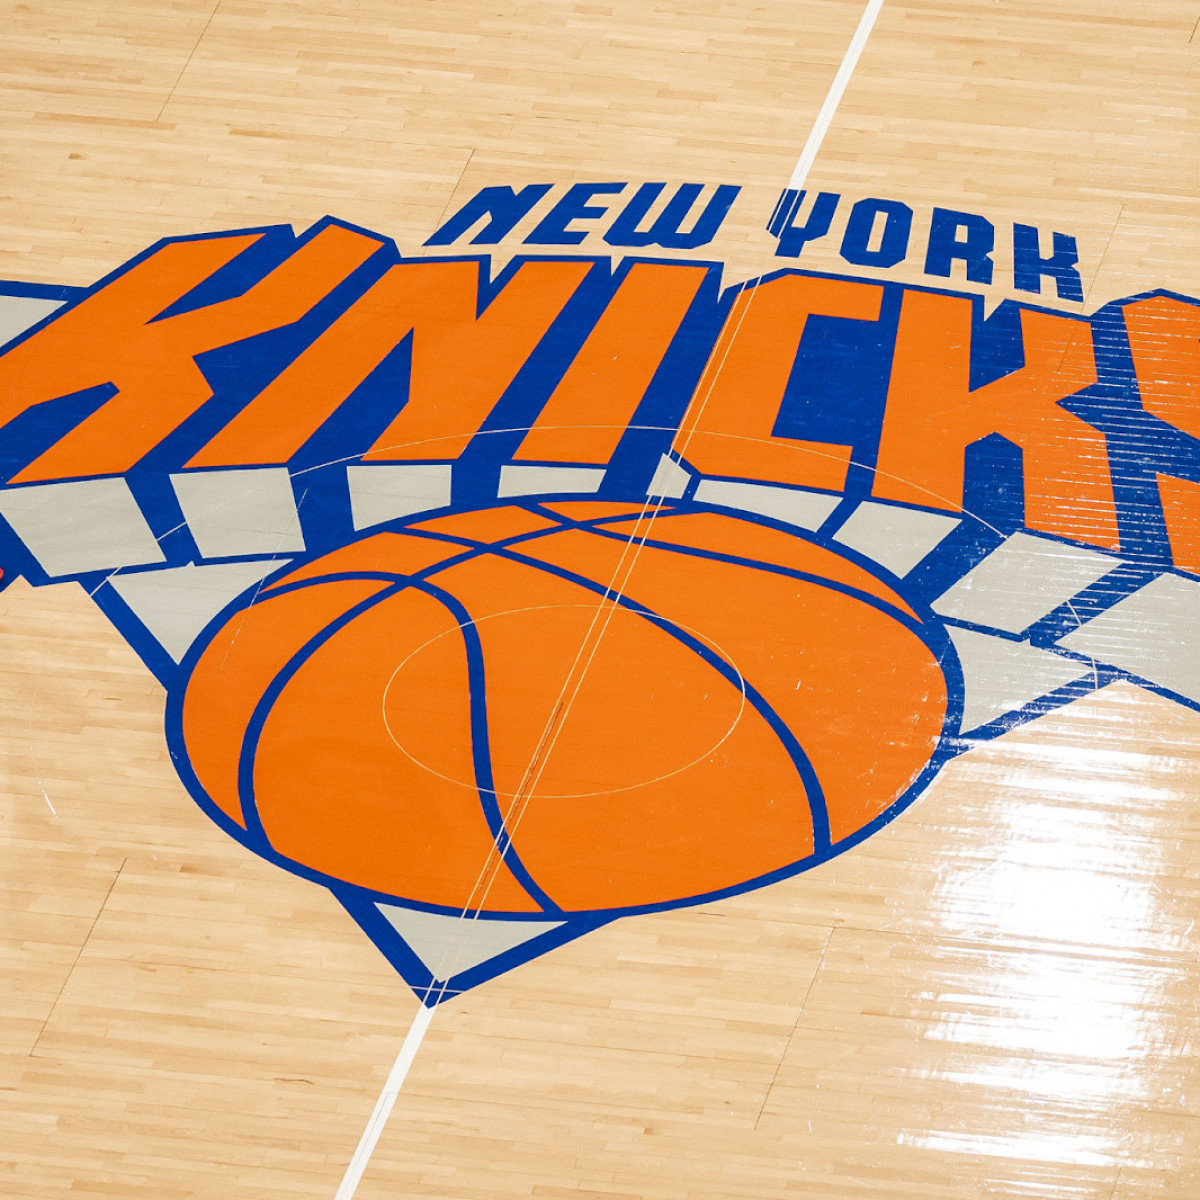 New York Knicks Tickets Cheap Tickets, Best Seats